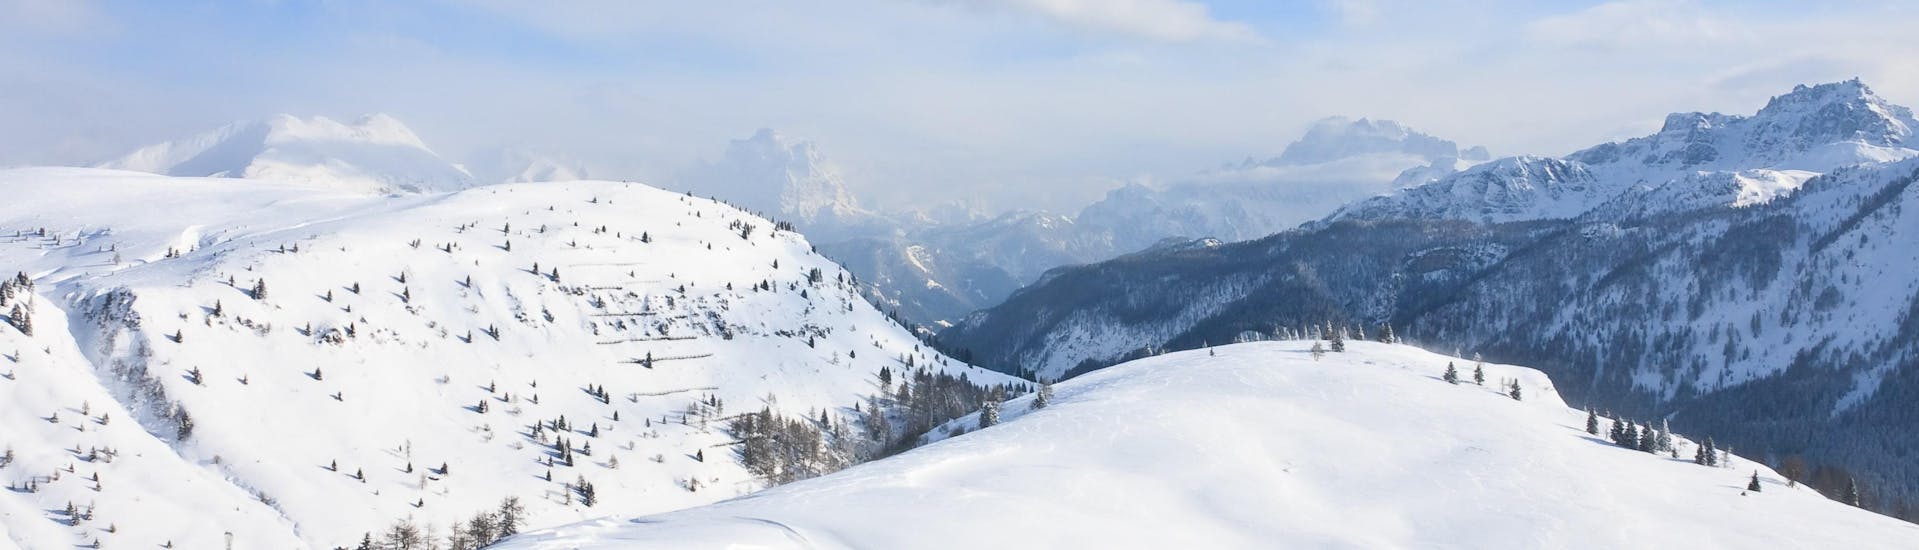 Piste da sci vicino a St. Christina dove è possibile prenotare lezioni di sci.